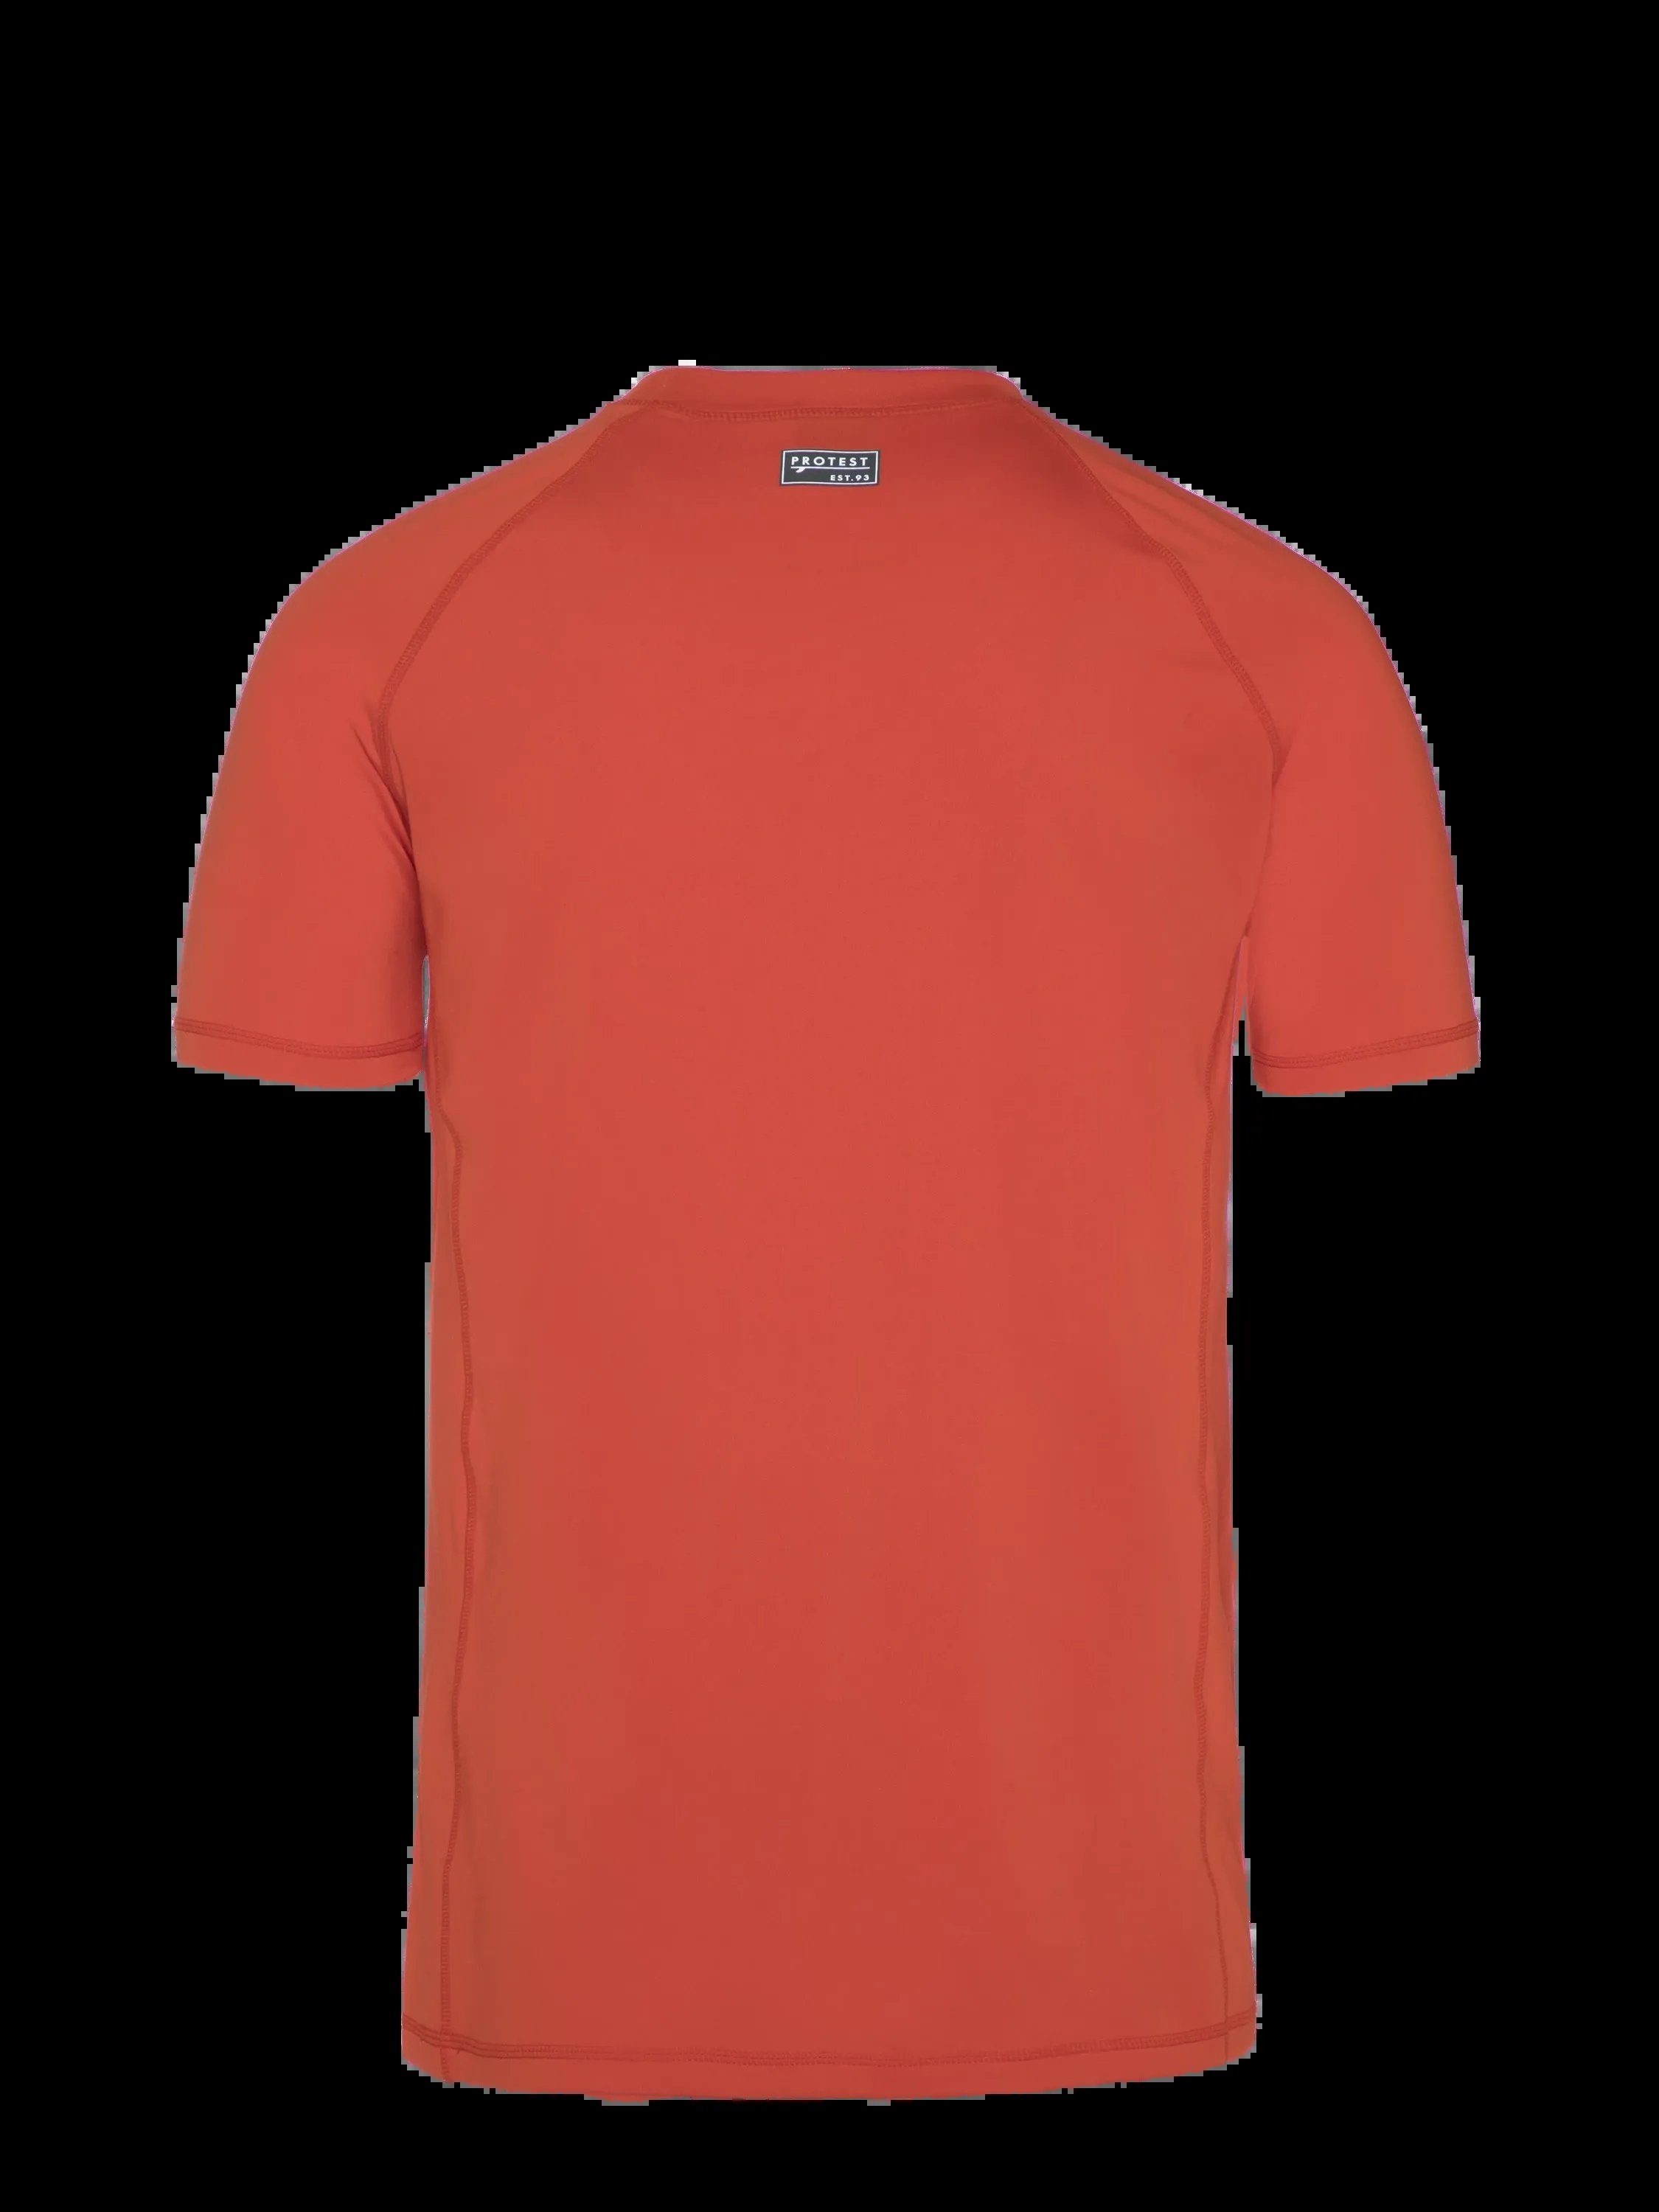 PRTCATER T-Shirt rashguard Tomato short Protest sleeve